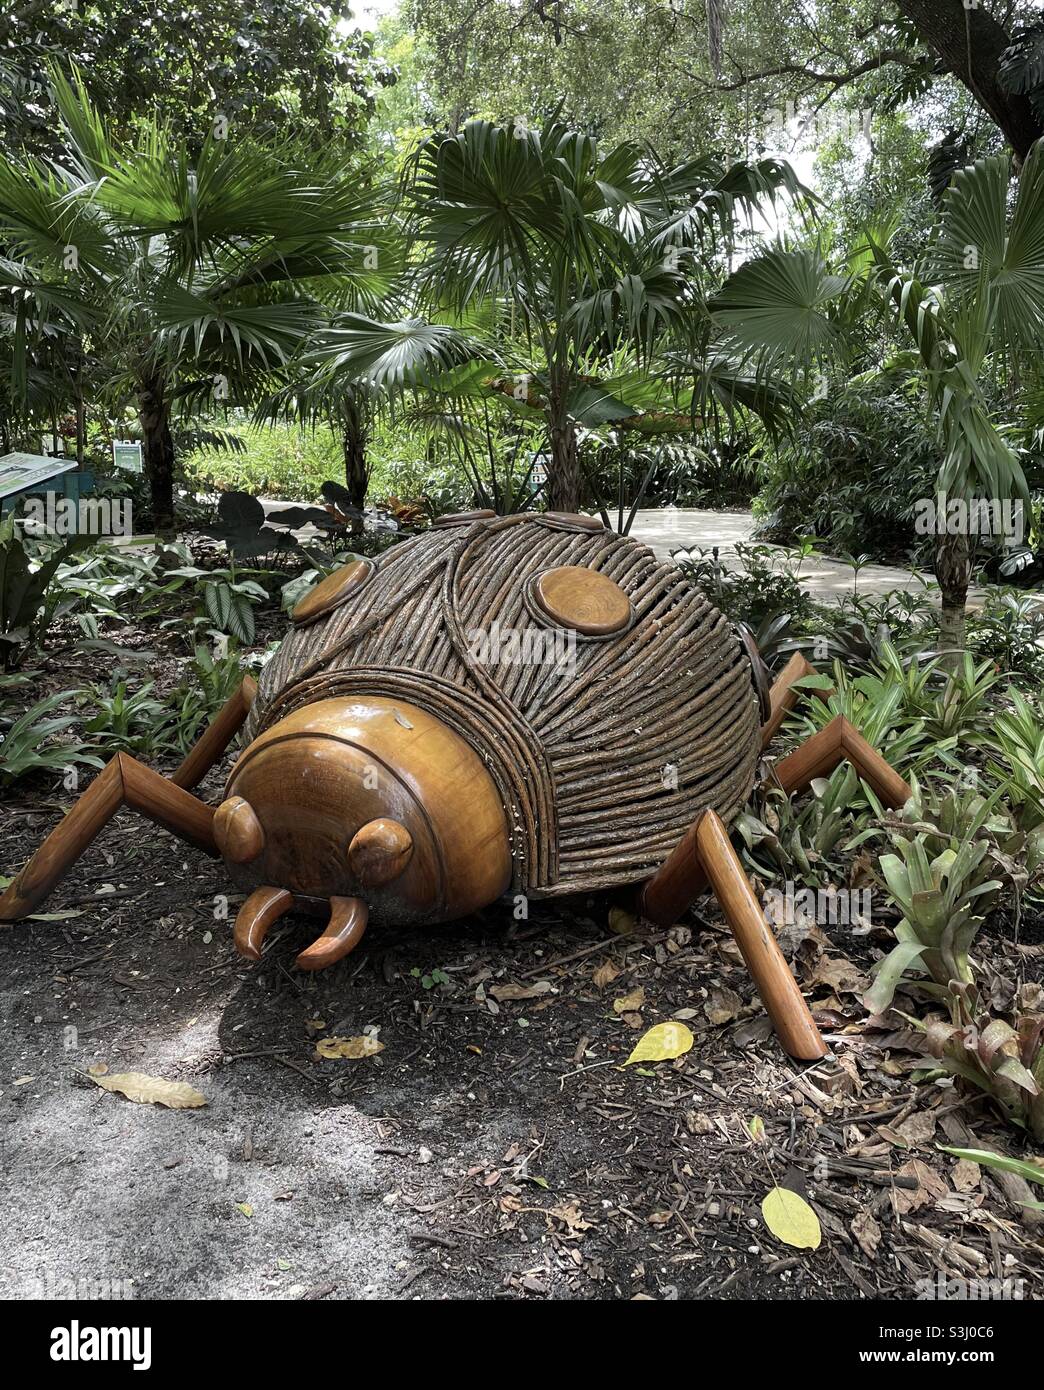 Sculpture en bois coccinelle dans un jardin tropical Banque D'Images